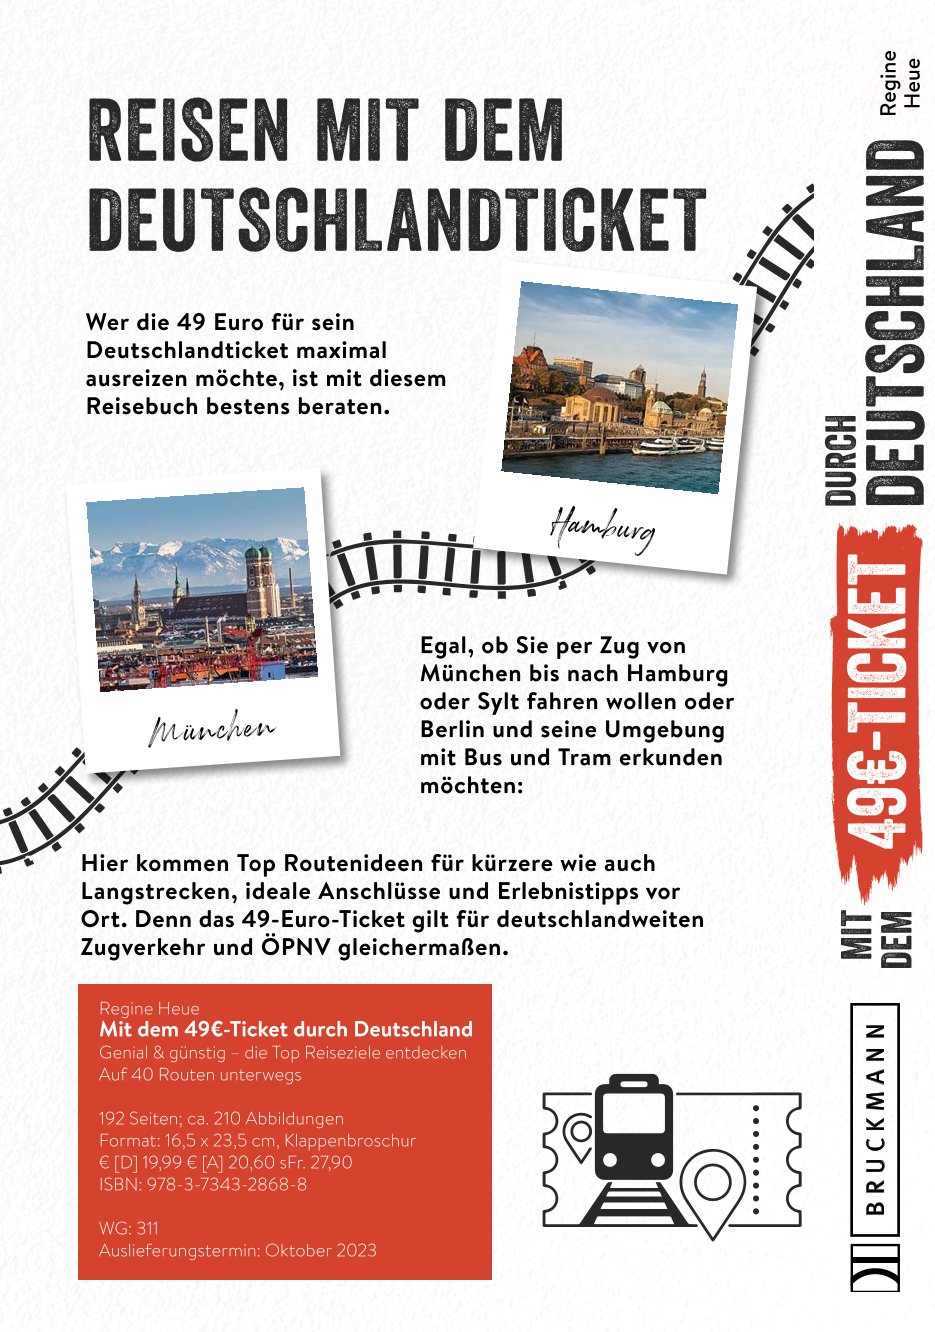 Mit dem 49€-Ticket durch Deutschland